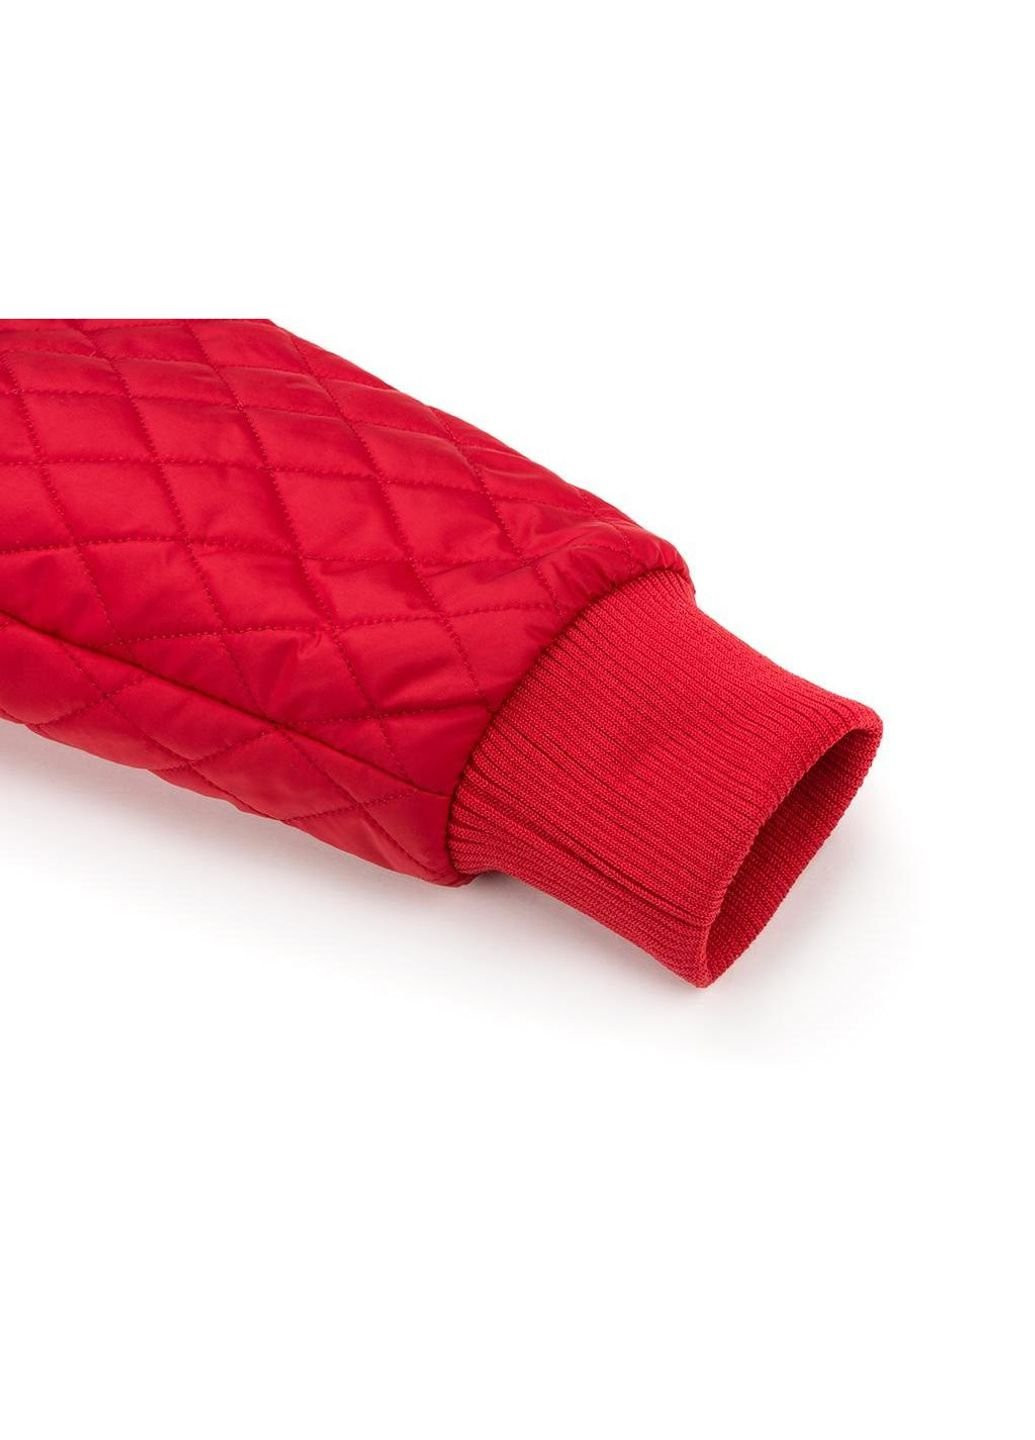 Красная демисезонная куртка стеганая с капюшоном (3439-98b-red) Verscon